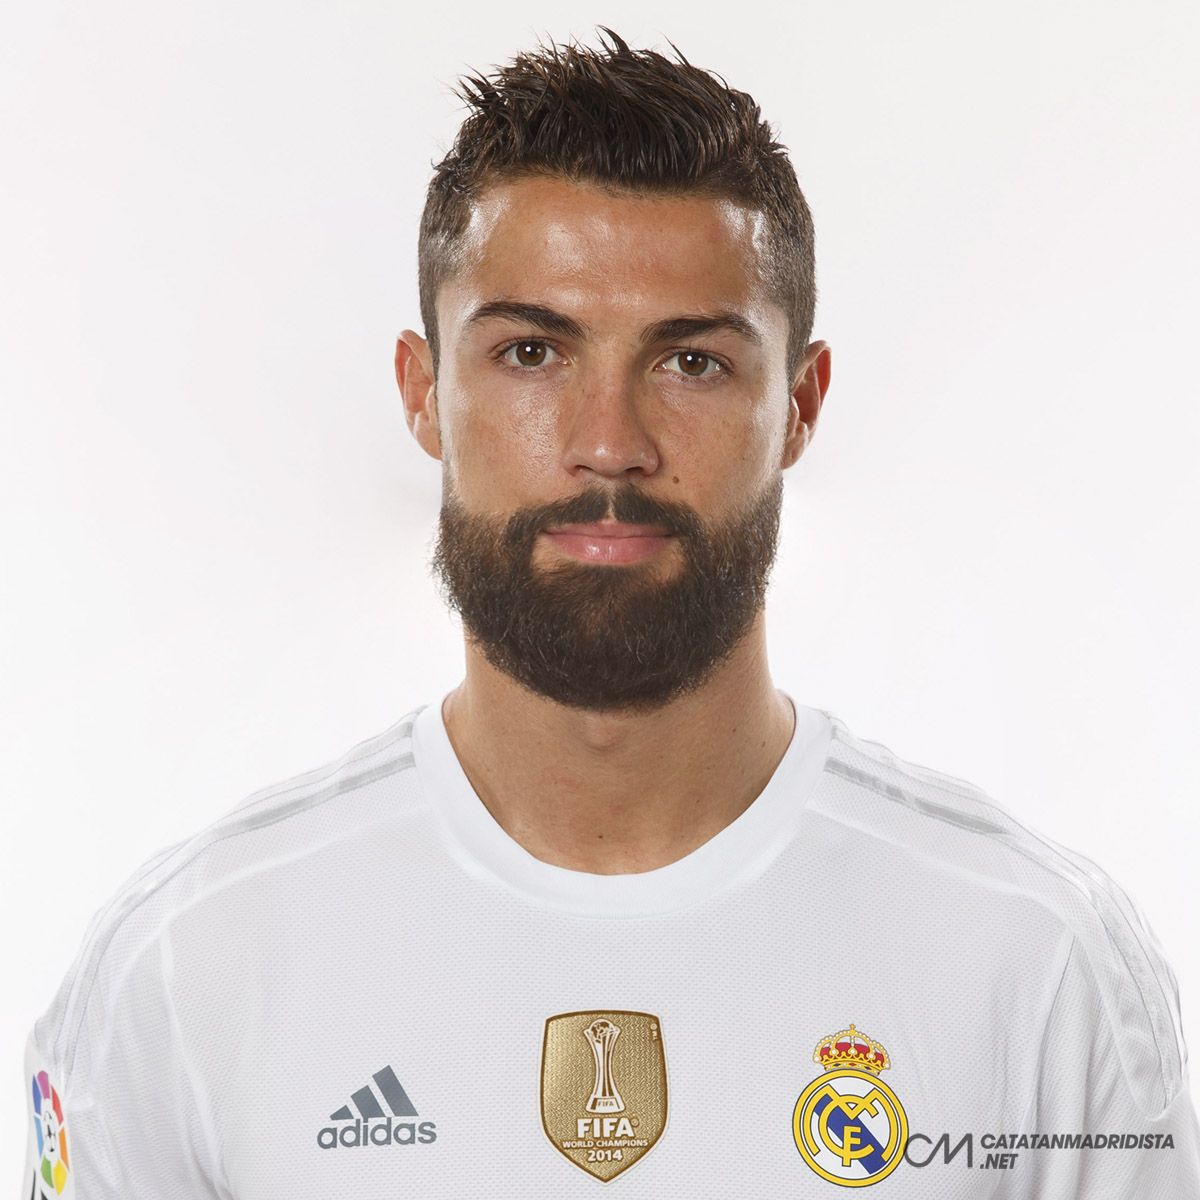 Cristiano Ronaldo with Beard.